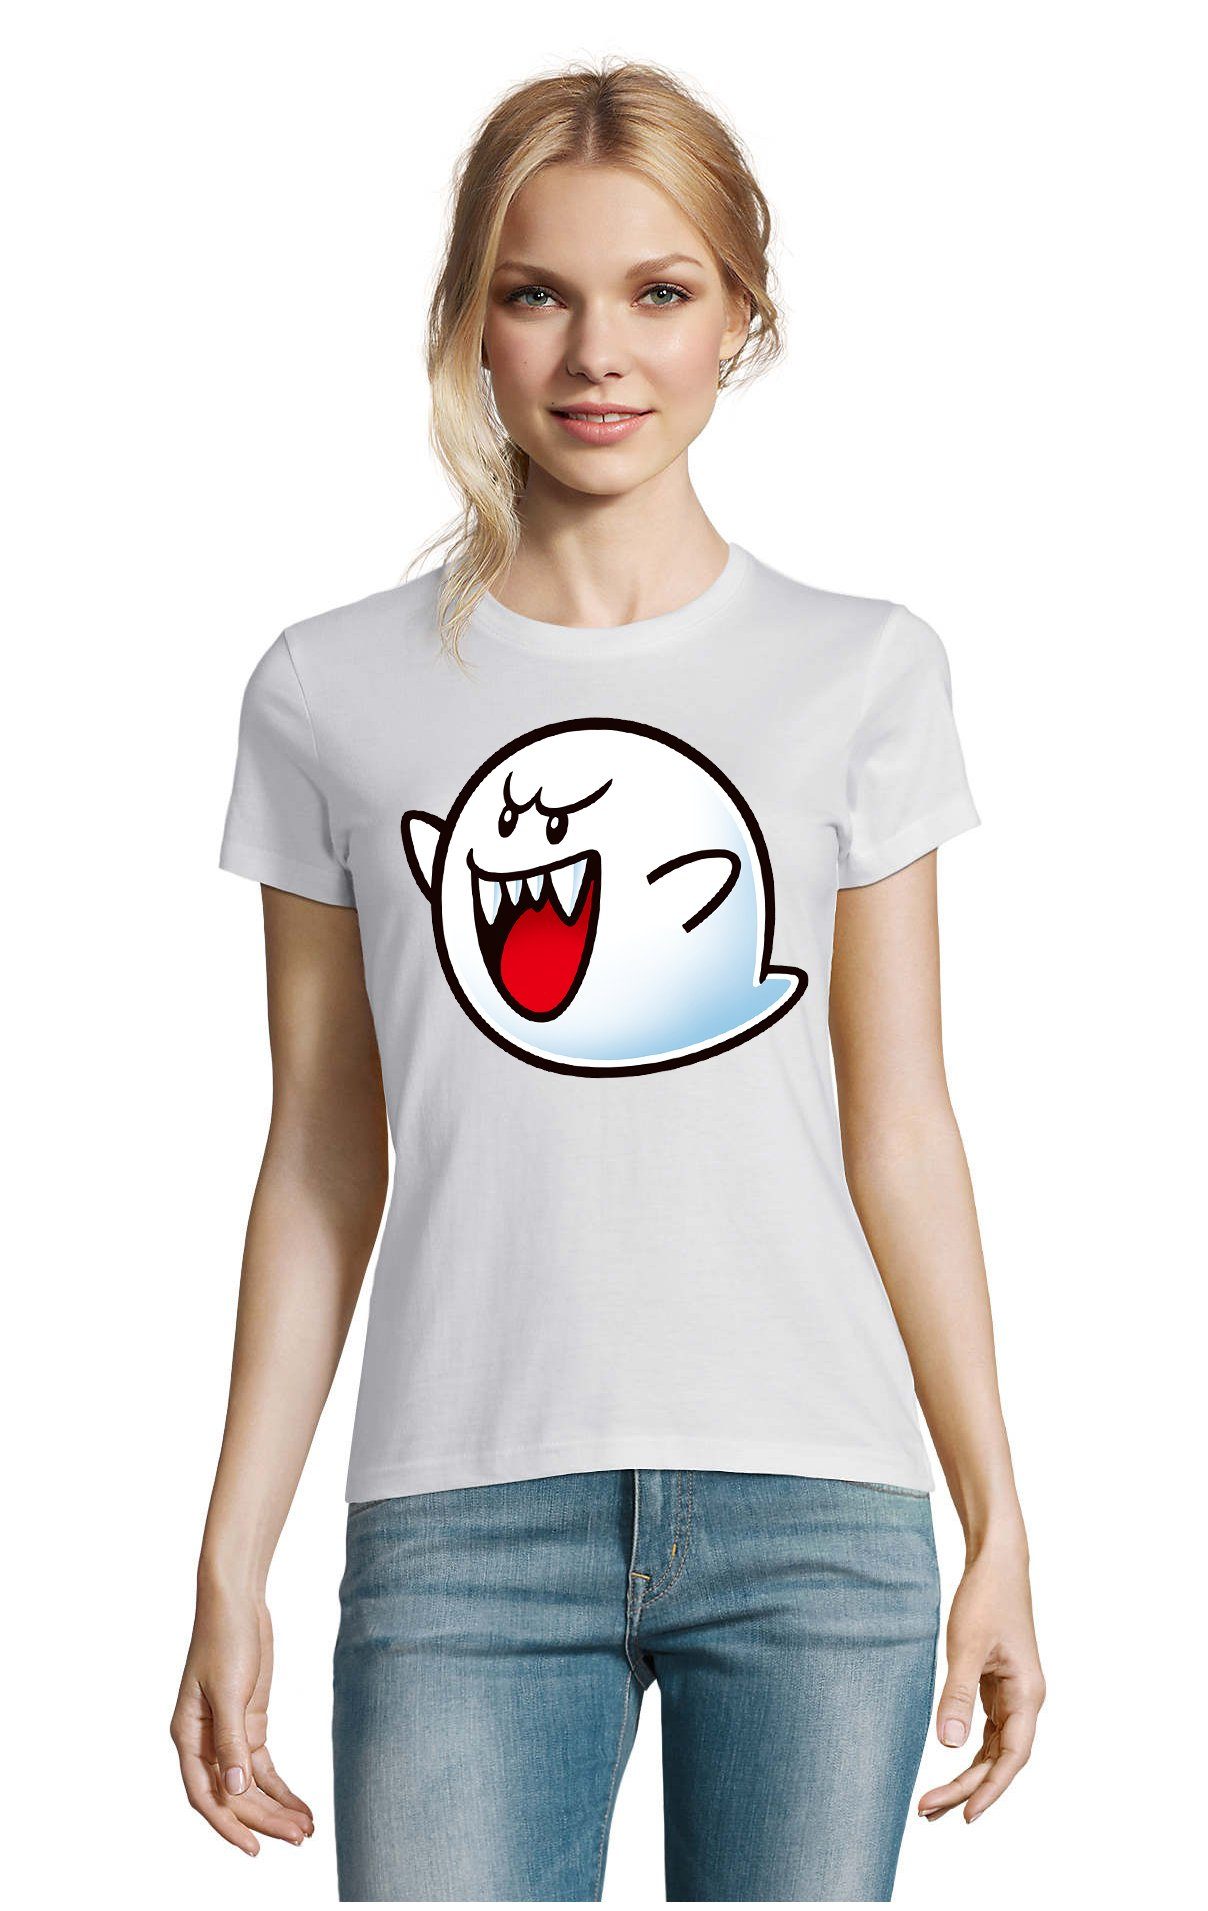 Blondie & Brownie Nintendo Konsole Gespenst Boo Damen T-Shirt Geist Super Weiss Mario